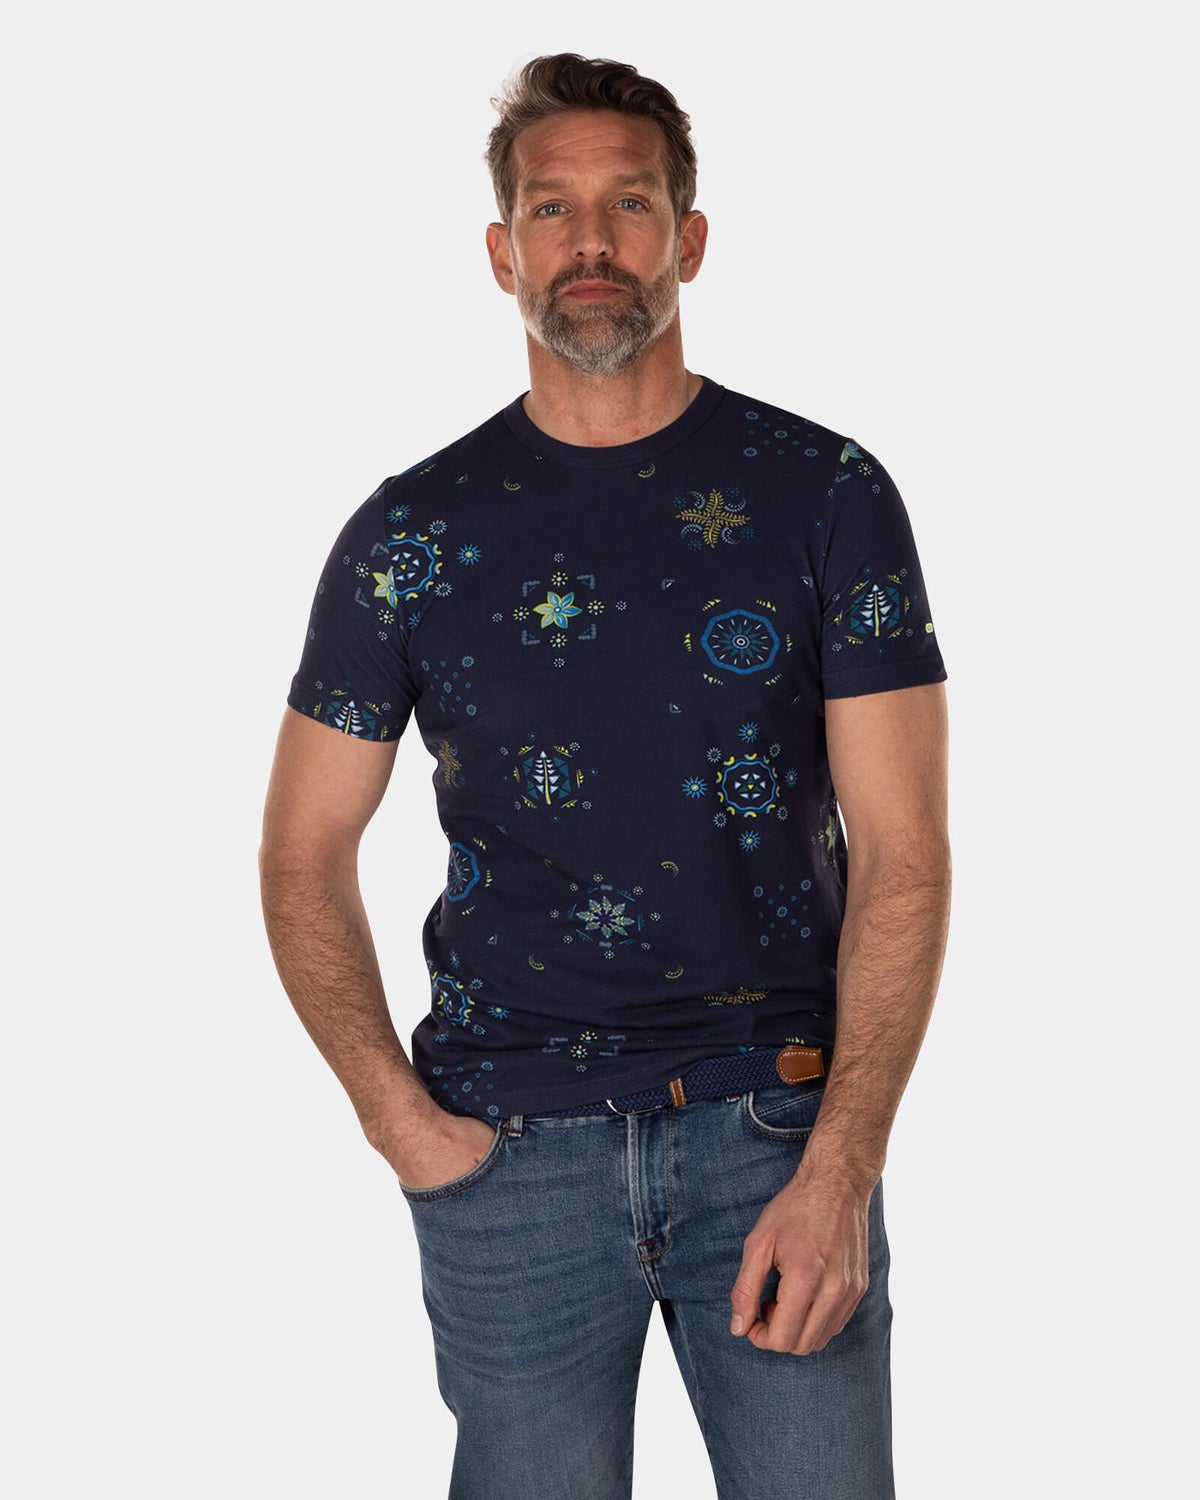 Baumwoll-T-Shirt mit dunkelblauem Aufdruck - High Summer Navy